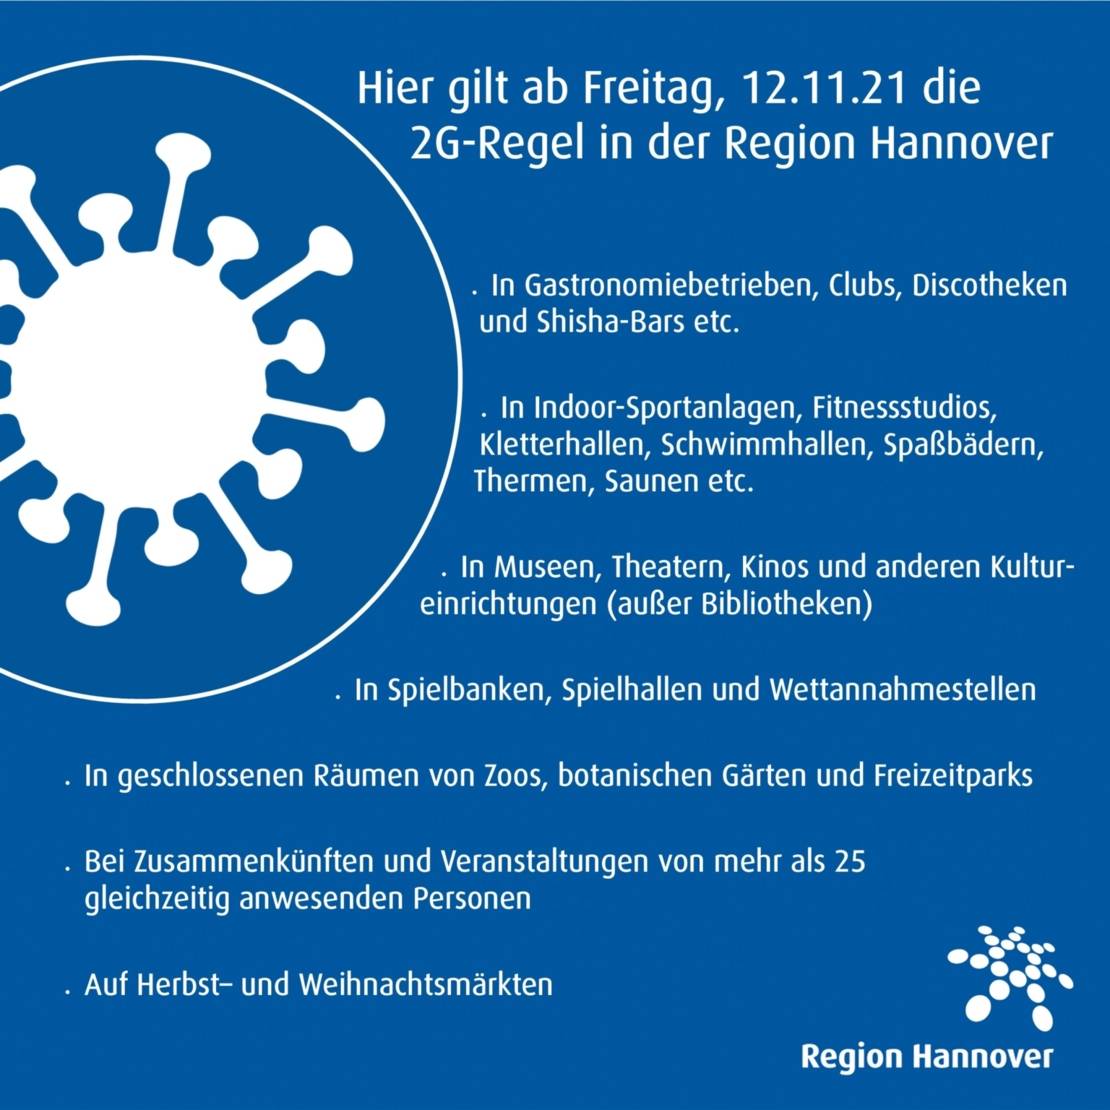 Hier Gilt Seit 12 November 2g Tests Wieder Kostenlos Meldungen Zum Coronavirus Coronavirus In Der Region Hannover Gesundheitsschutz Gesundheit Leben In Der Region Hannover